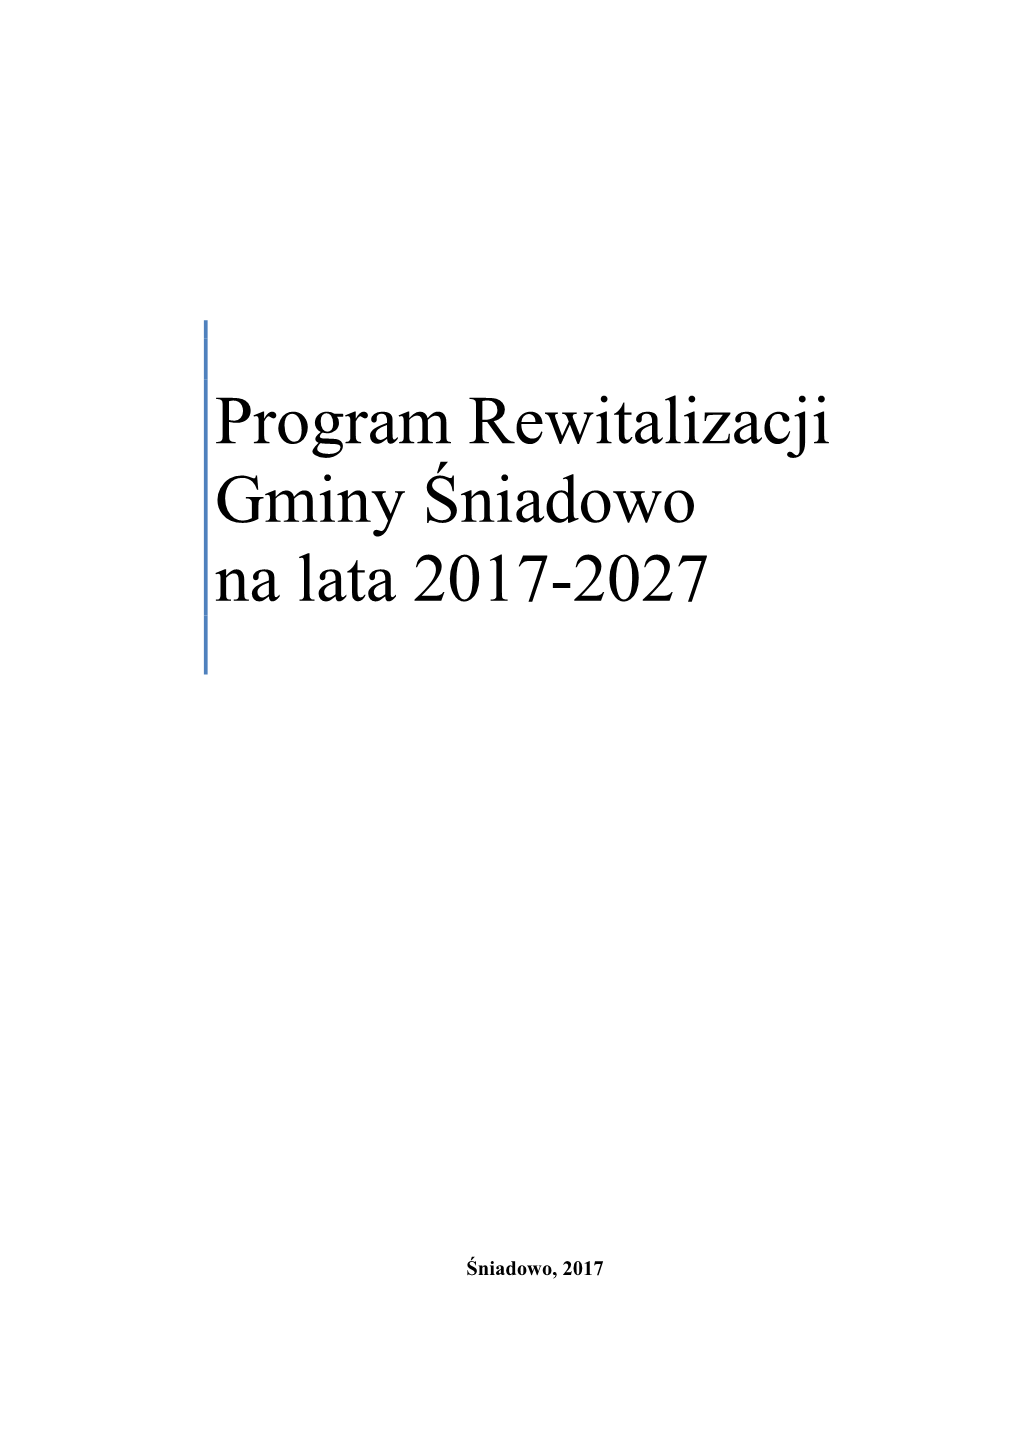 Program Rewitalizacji Gminy Śniadowo Na Lata 2017-2027